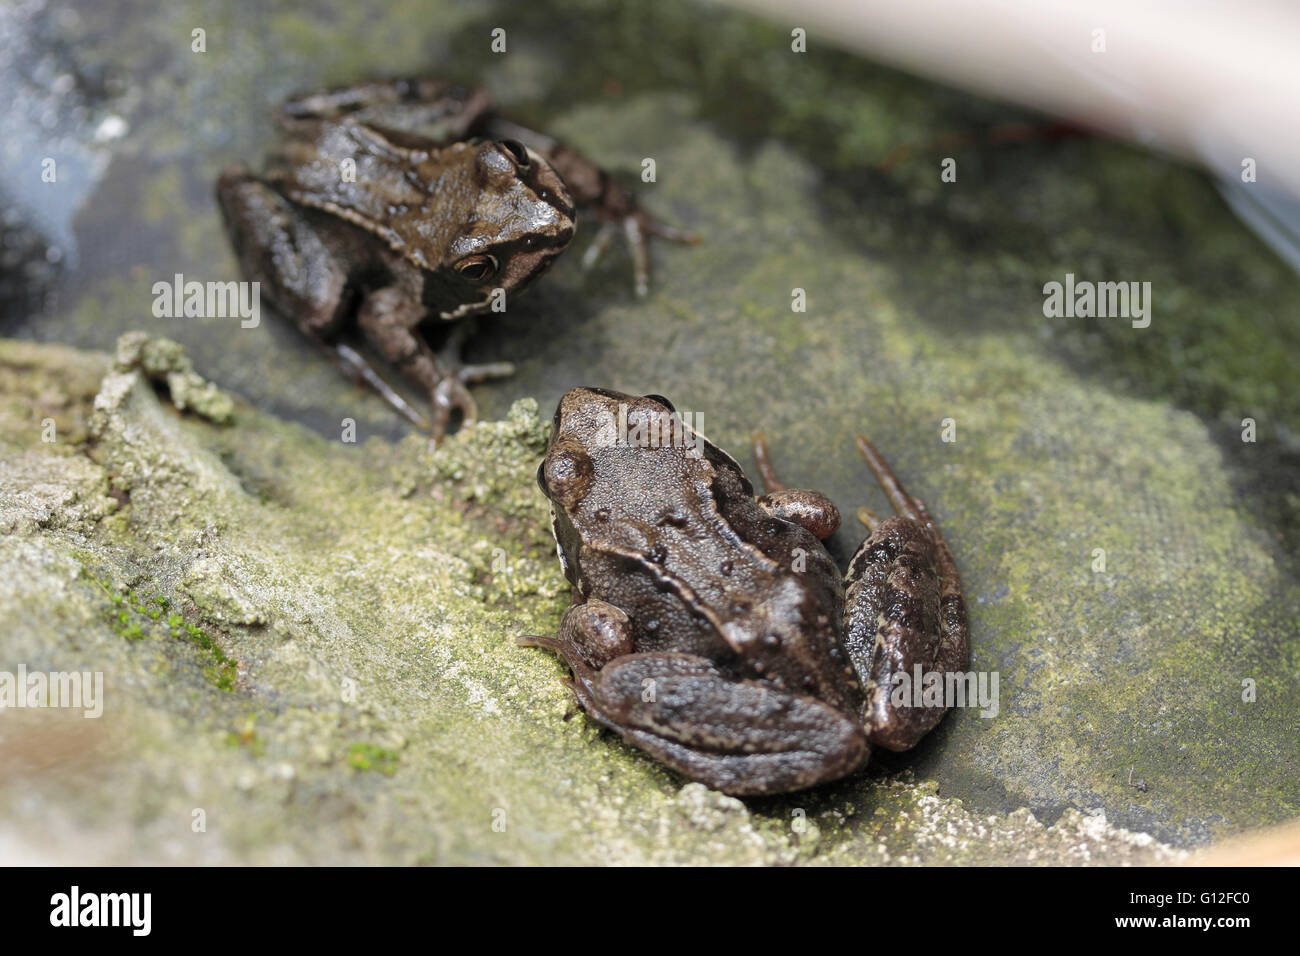 Les grenouilles Rana temporaria anglais commun dans un étang de jardin Banque D'Images